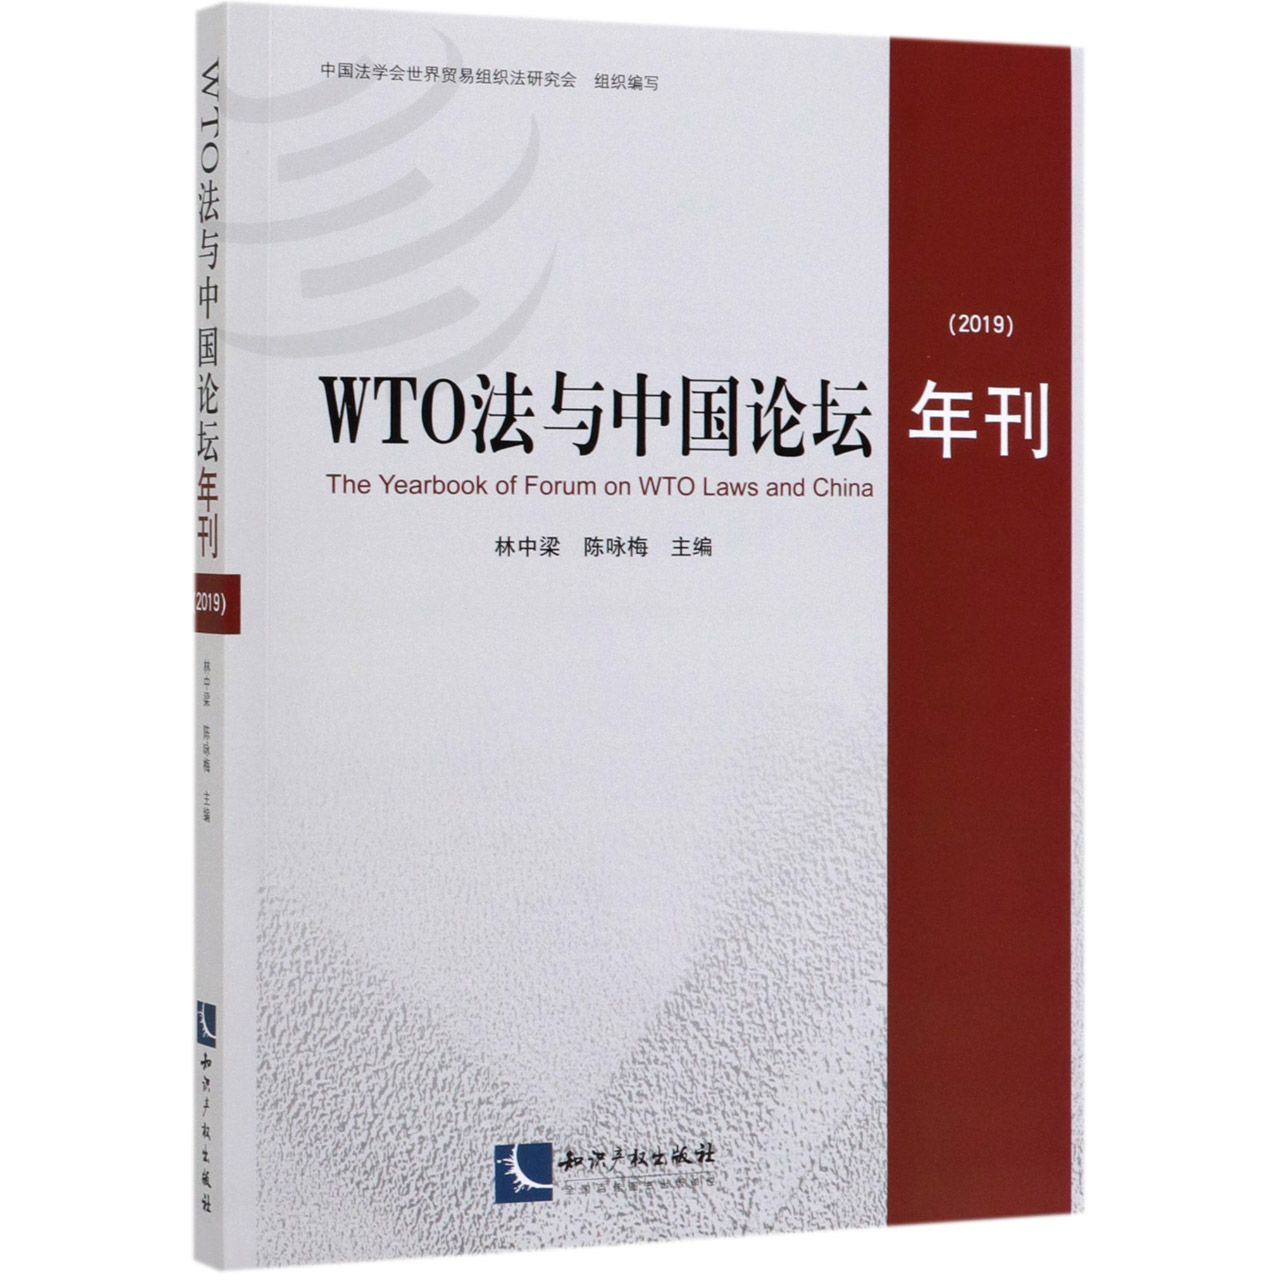 WTO法与中国论坛年刊(2019)官方正版 博库网